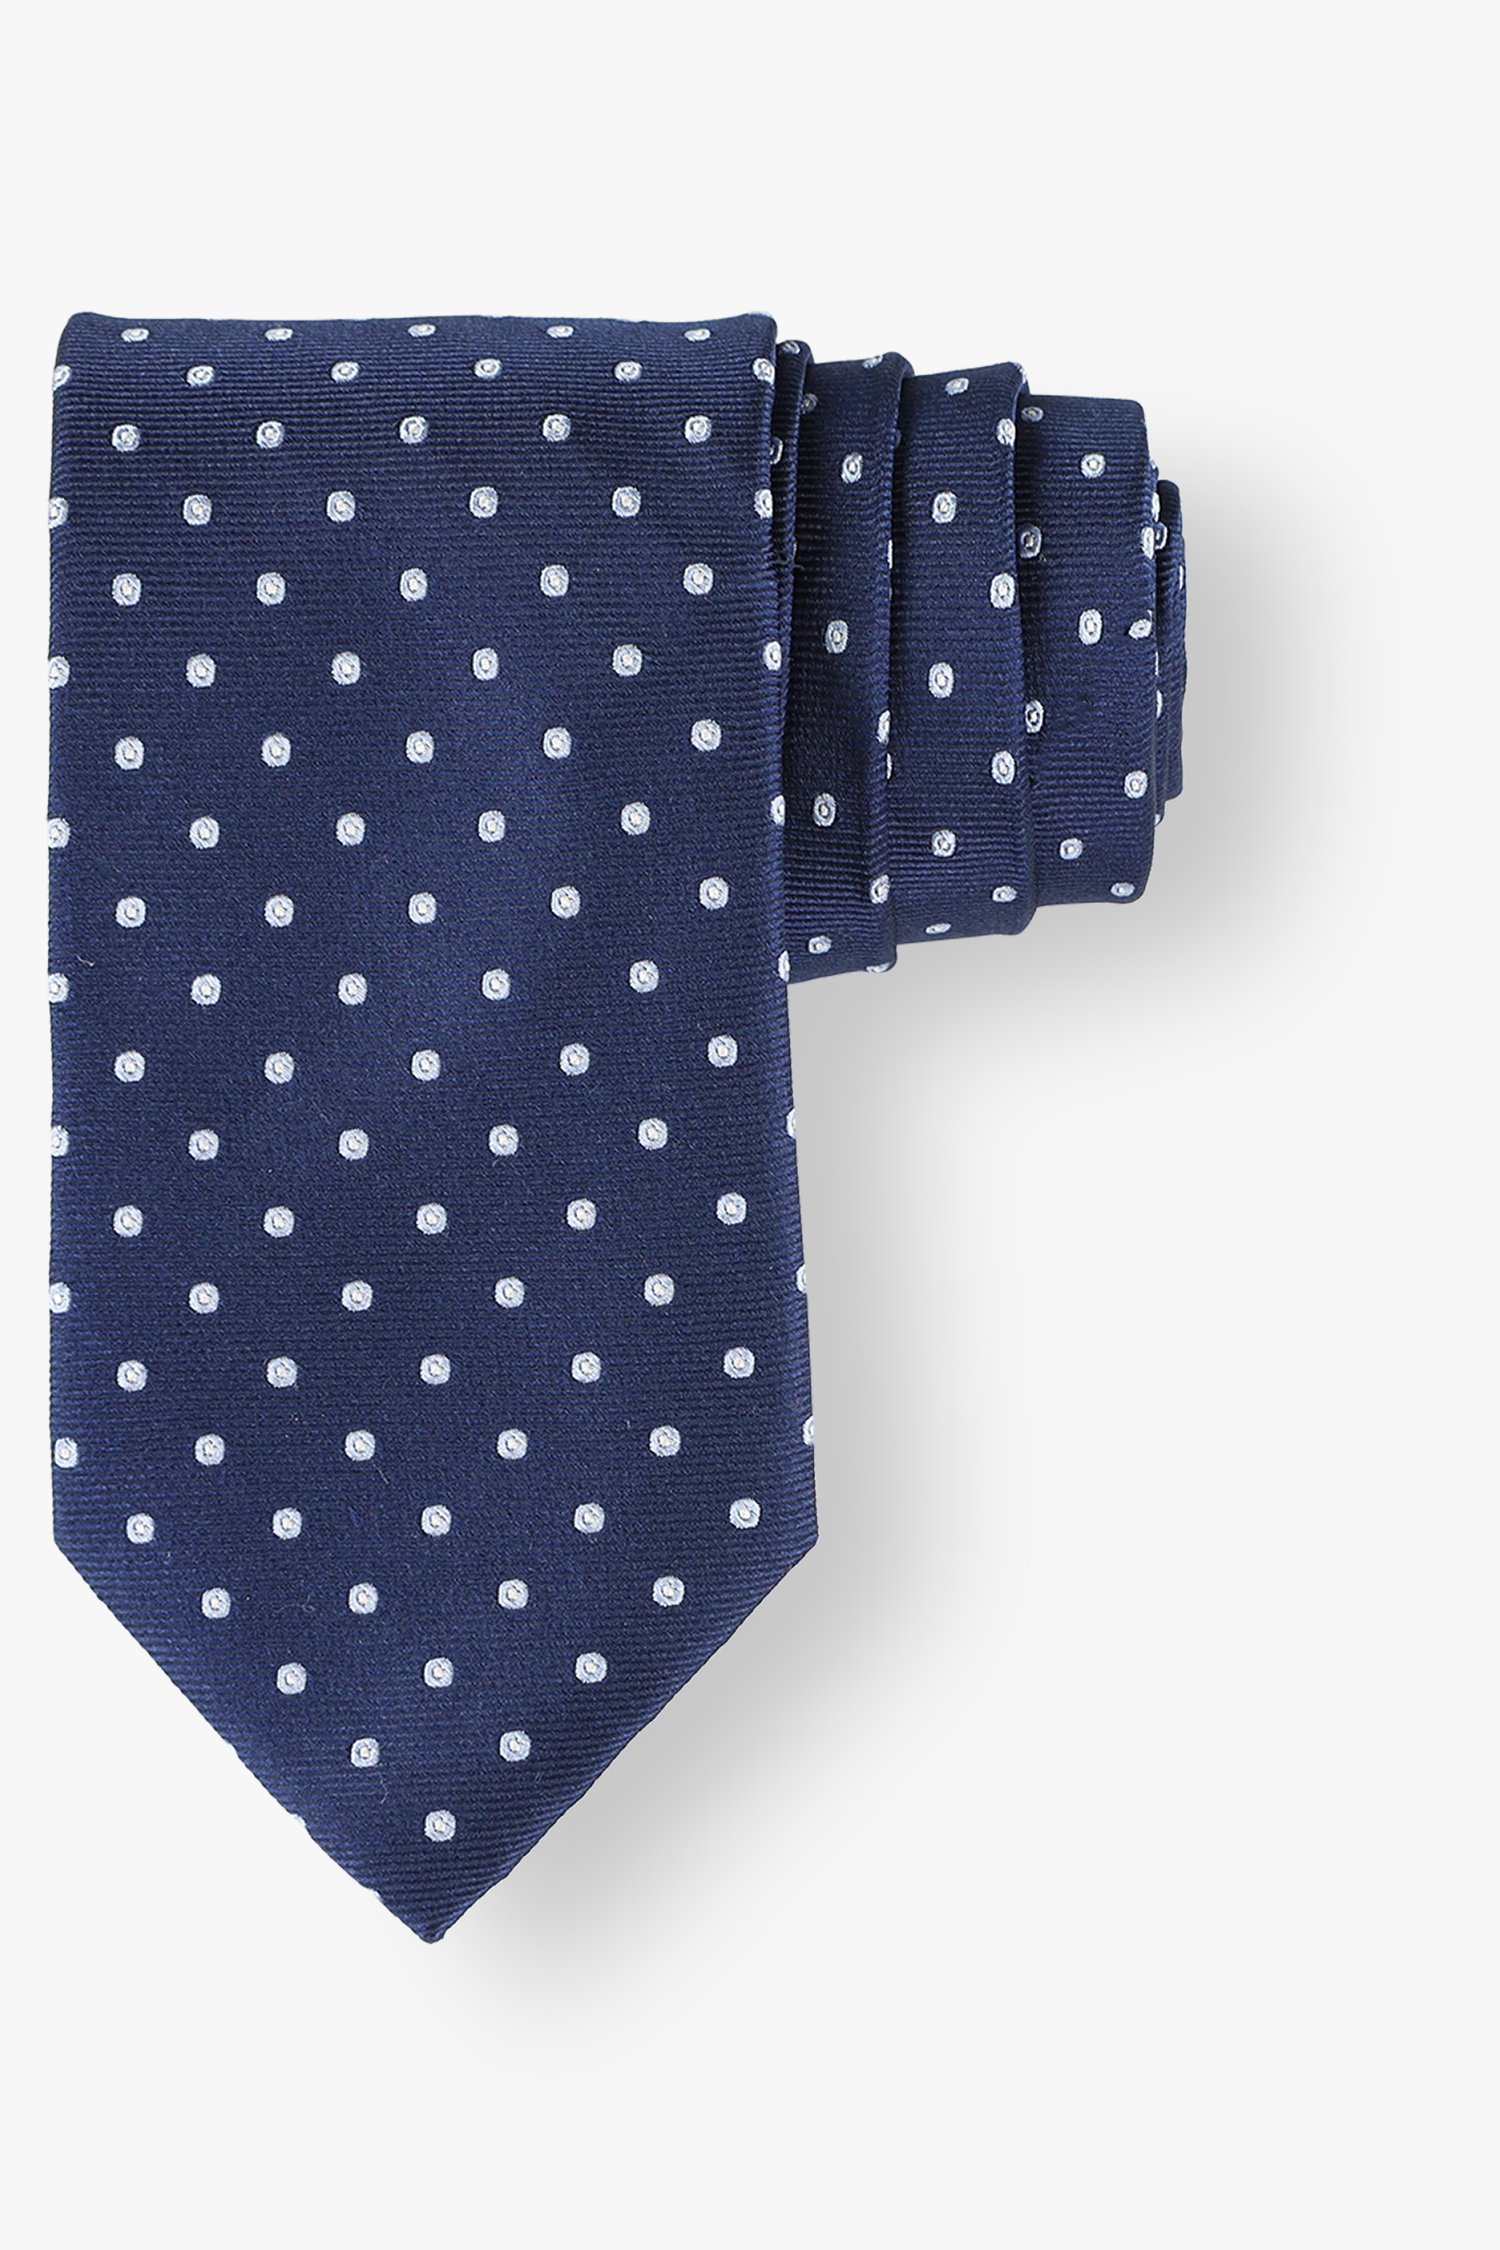 Cravate bleu marine avec imprimé à pois bleu clair de Michaelis pour Hommes